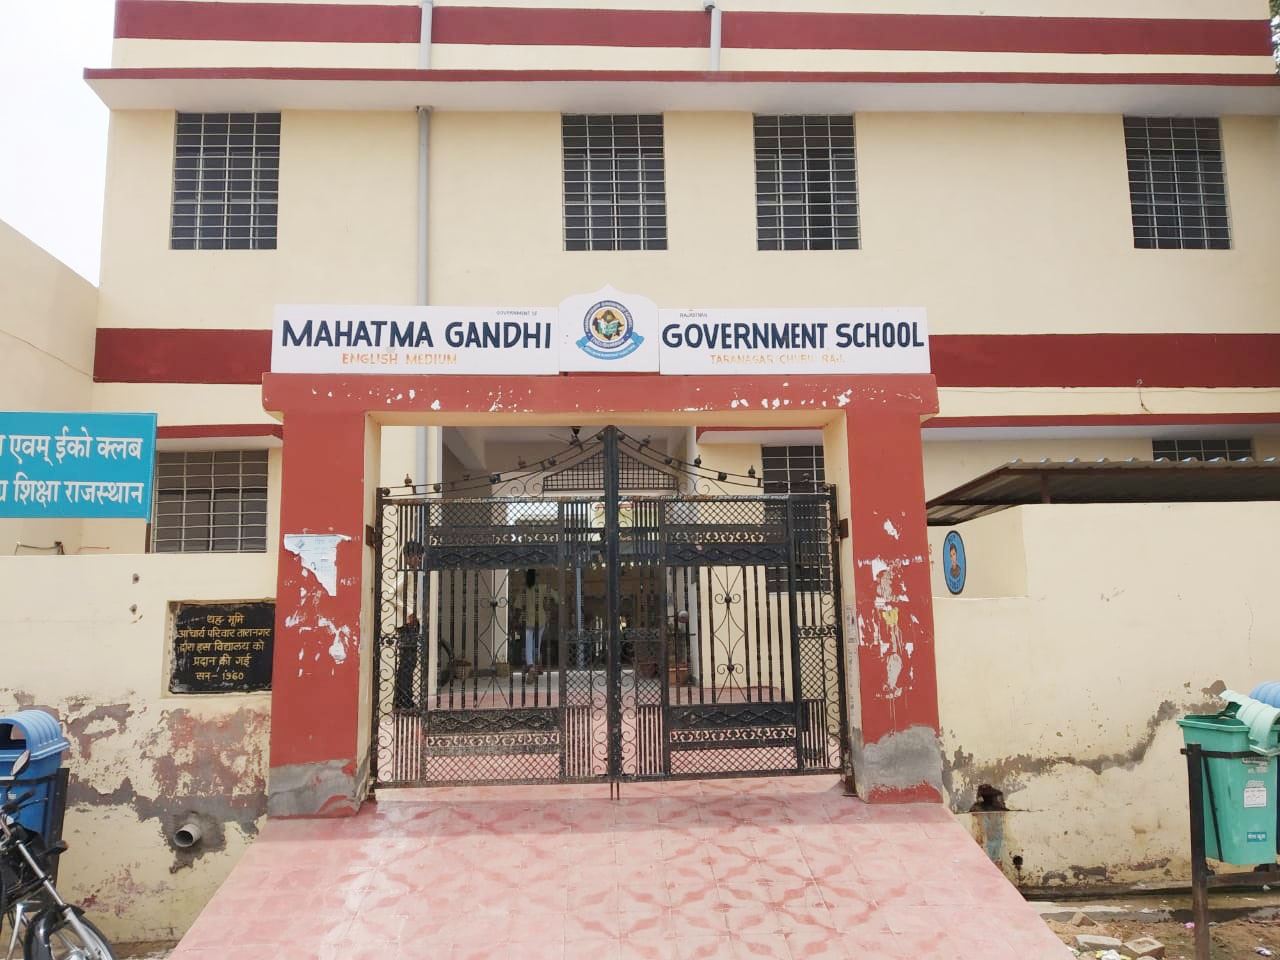  MAHATMA GANDHI GOVT. SCHOOL, TARANAGAR (CHURU) (08040114001)